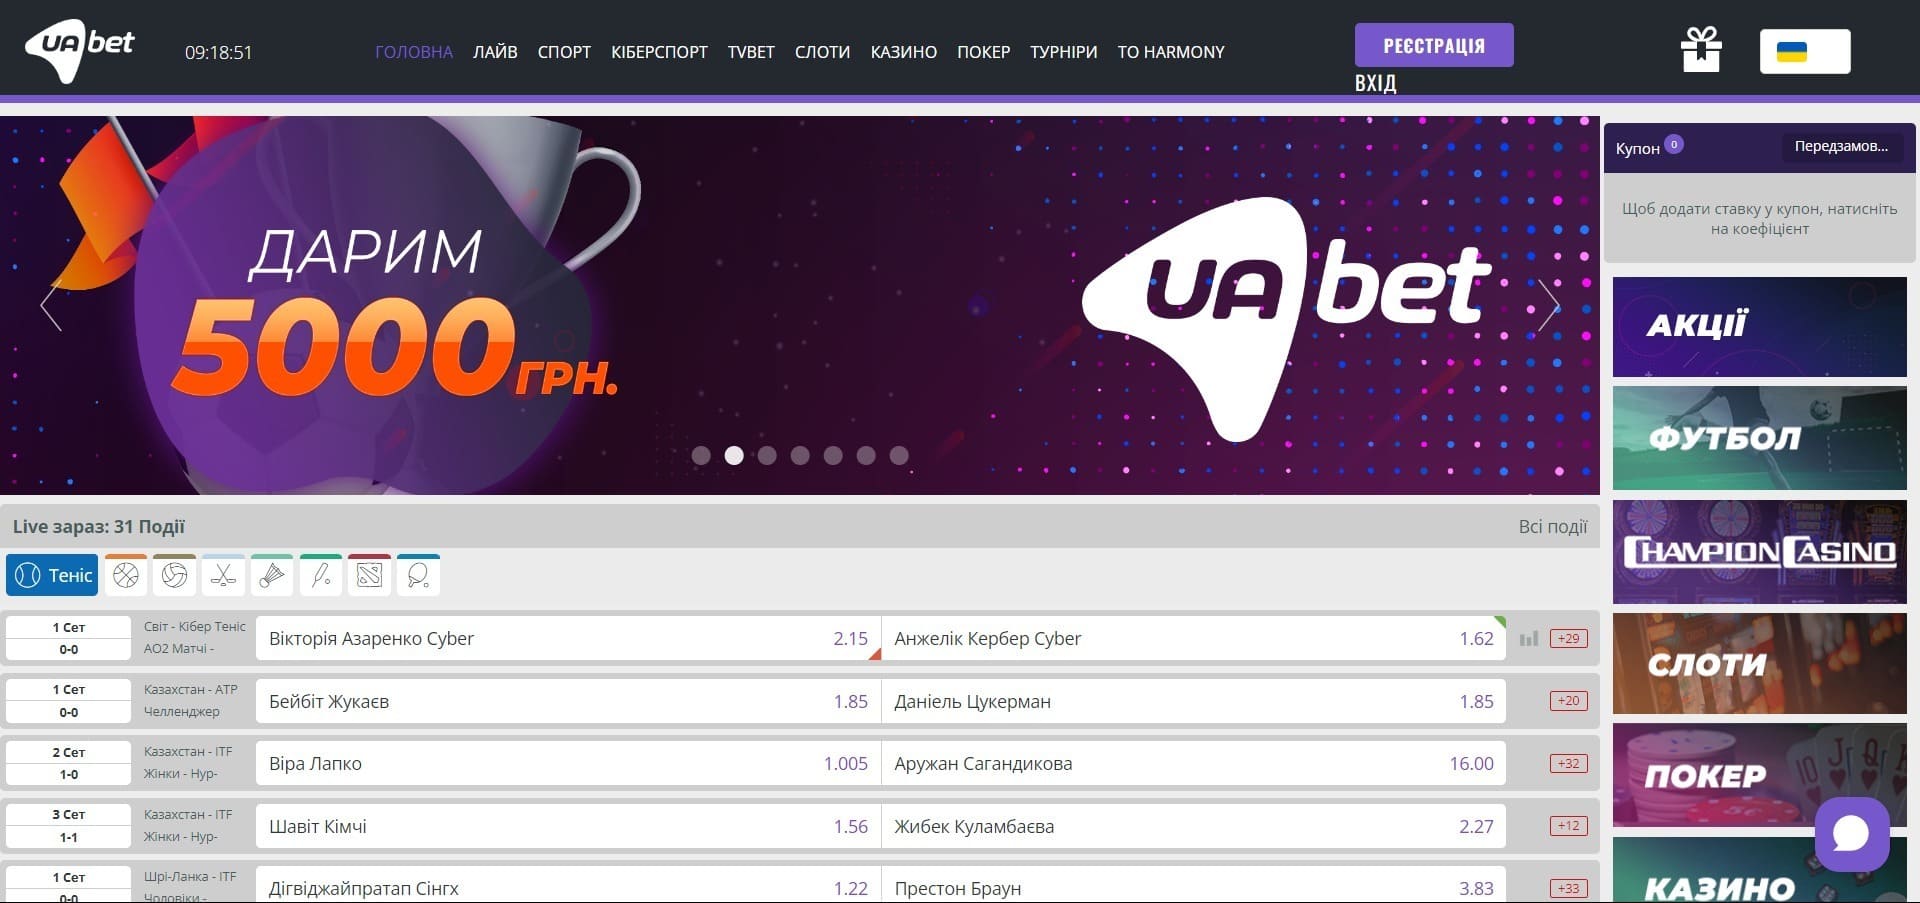 Офіційний сайт букмекерської контори UAbet